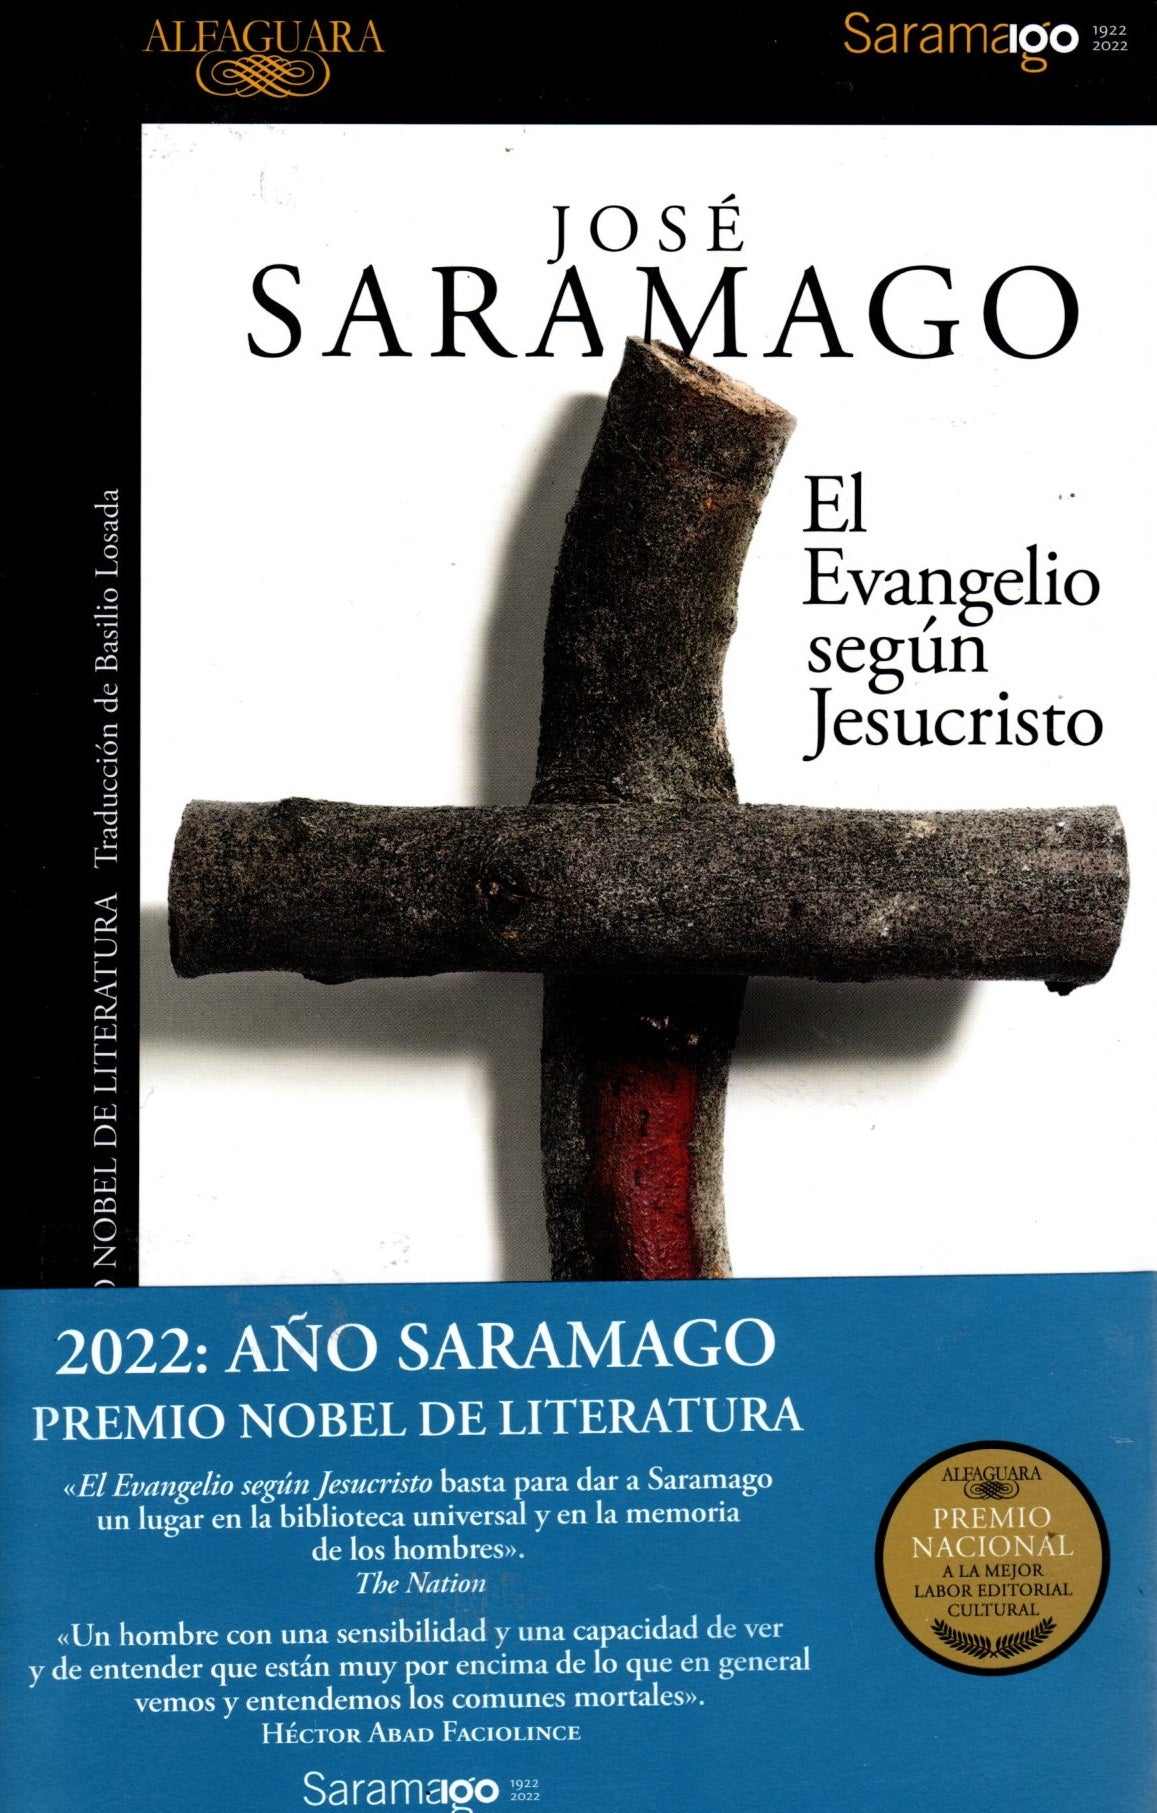 Libro José Saramago-El Evangelio según Jesucristo